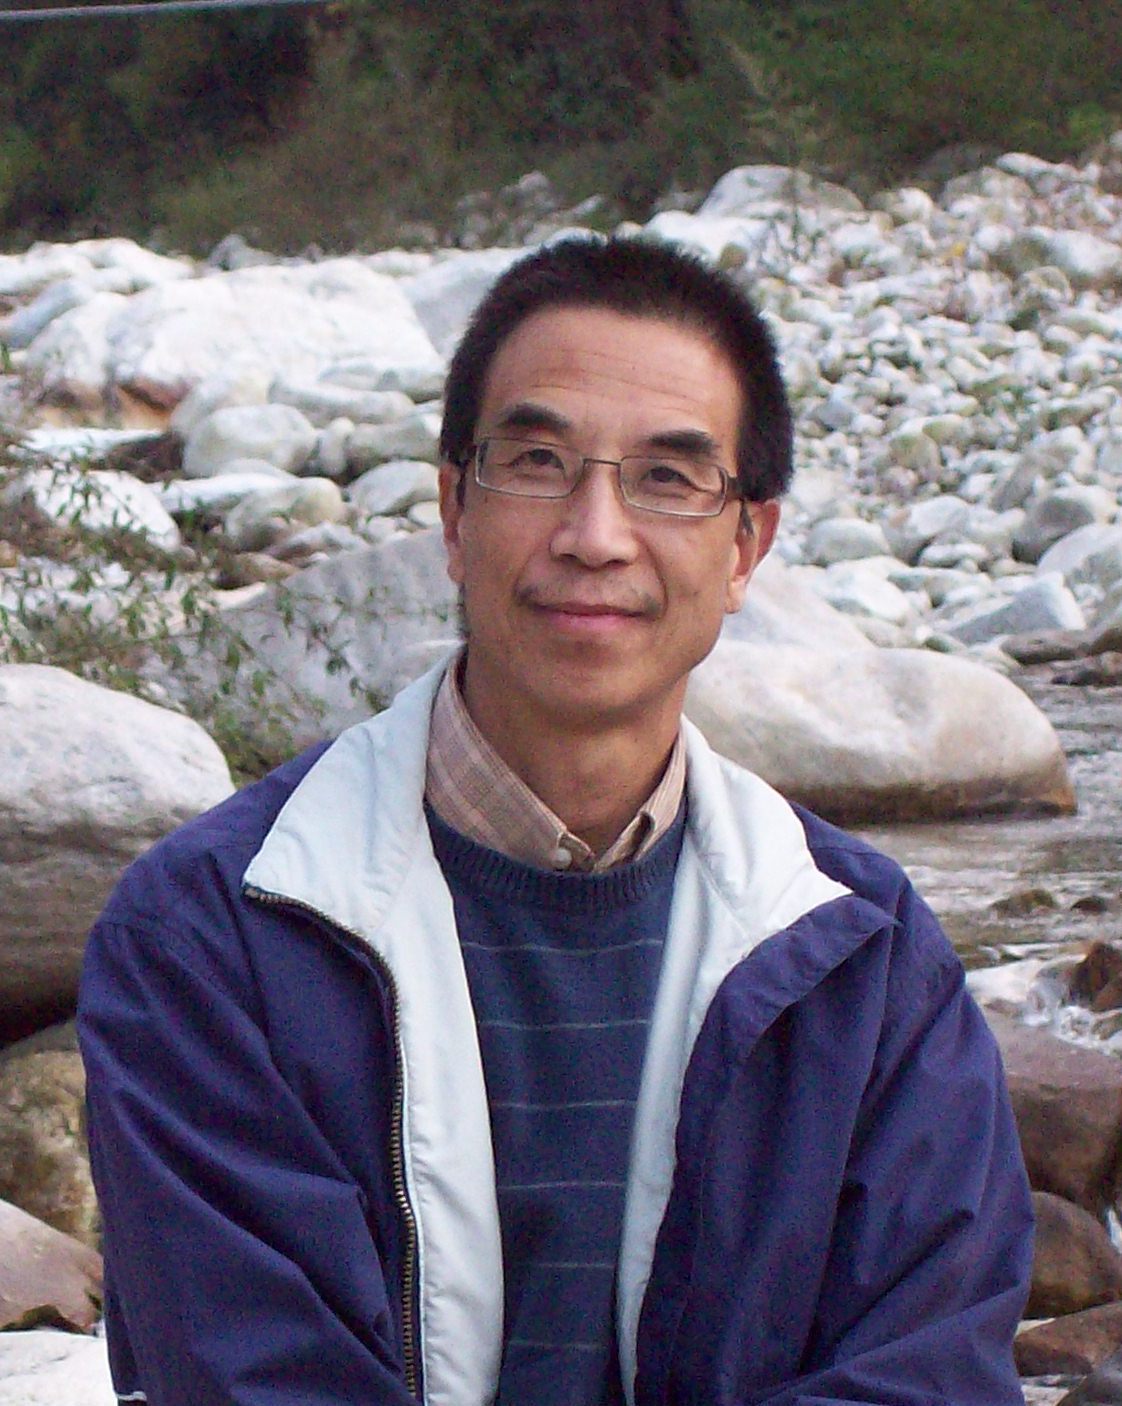 Martin Wang